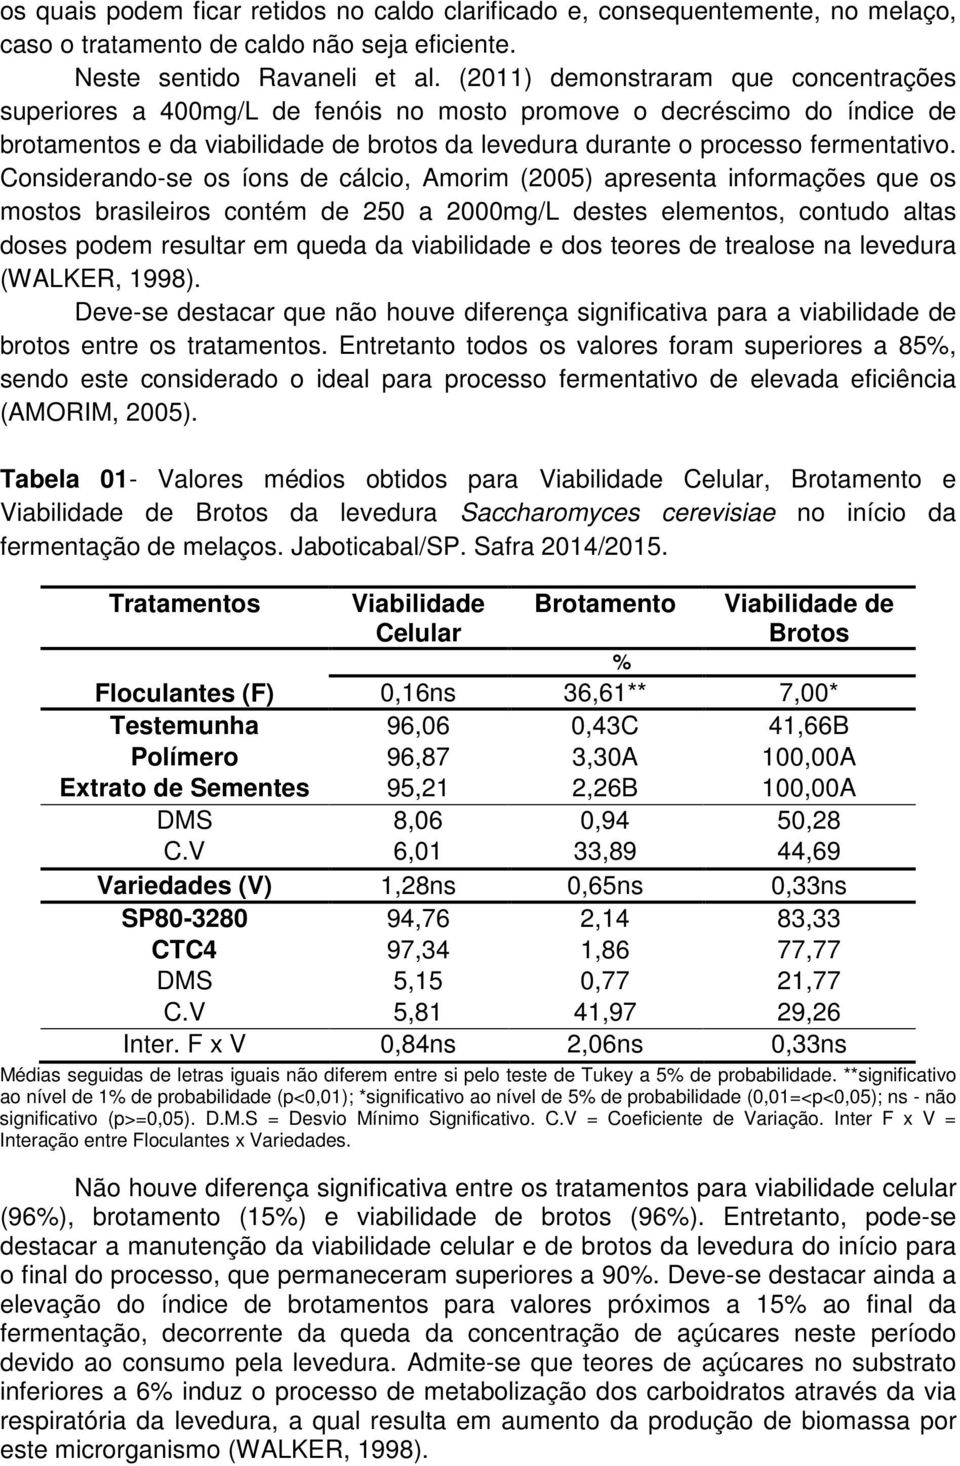 Considerando-se os íons de cálcio, Amorim (2005) apresenta informações que os mostos brasileiros contém de 250 a 2000mg/L destes elementos, contudo altas doses podem resultar em queda da viabilidade